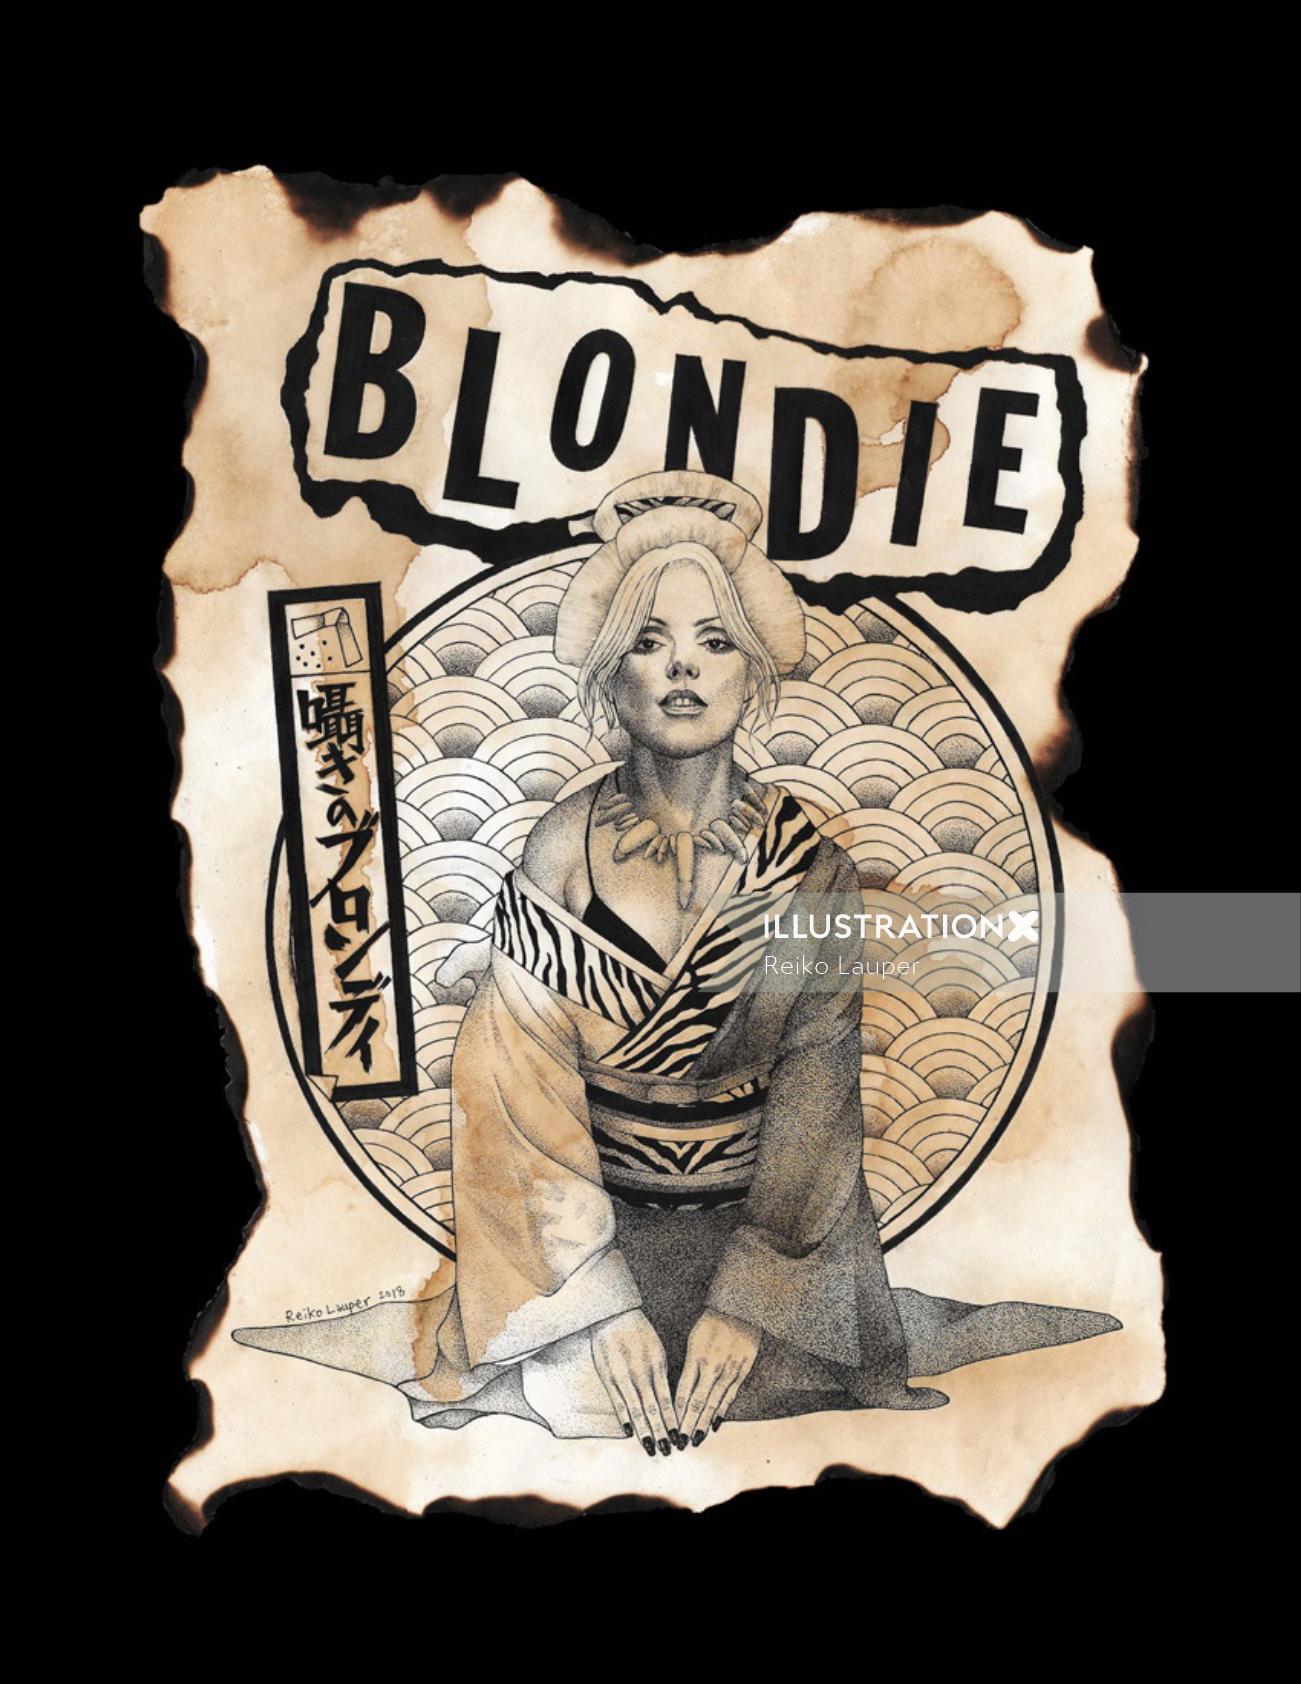 Série de pôsteres de rock japoneses: Blondie